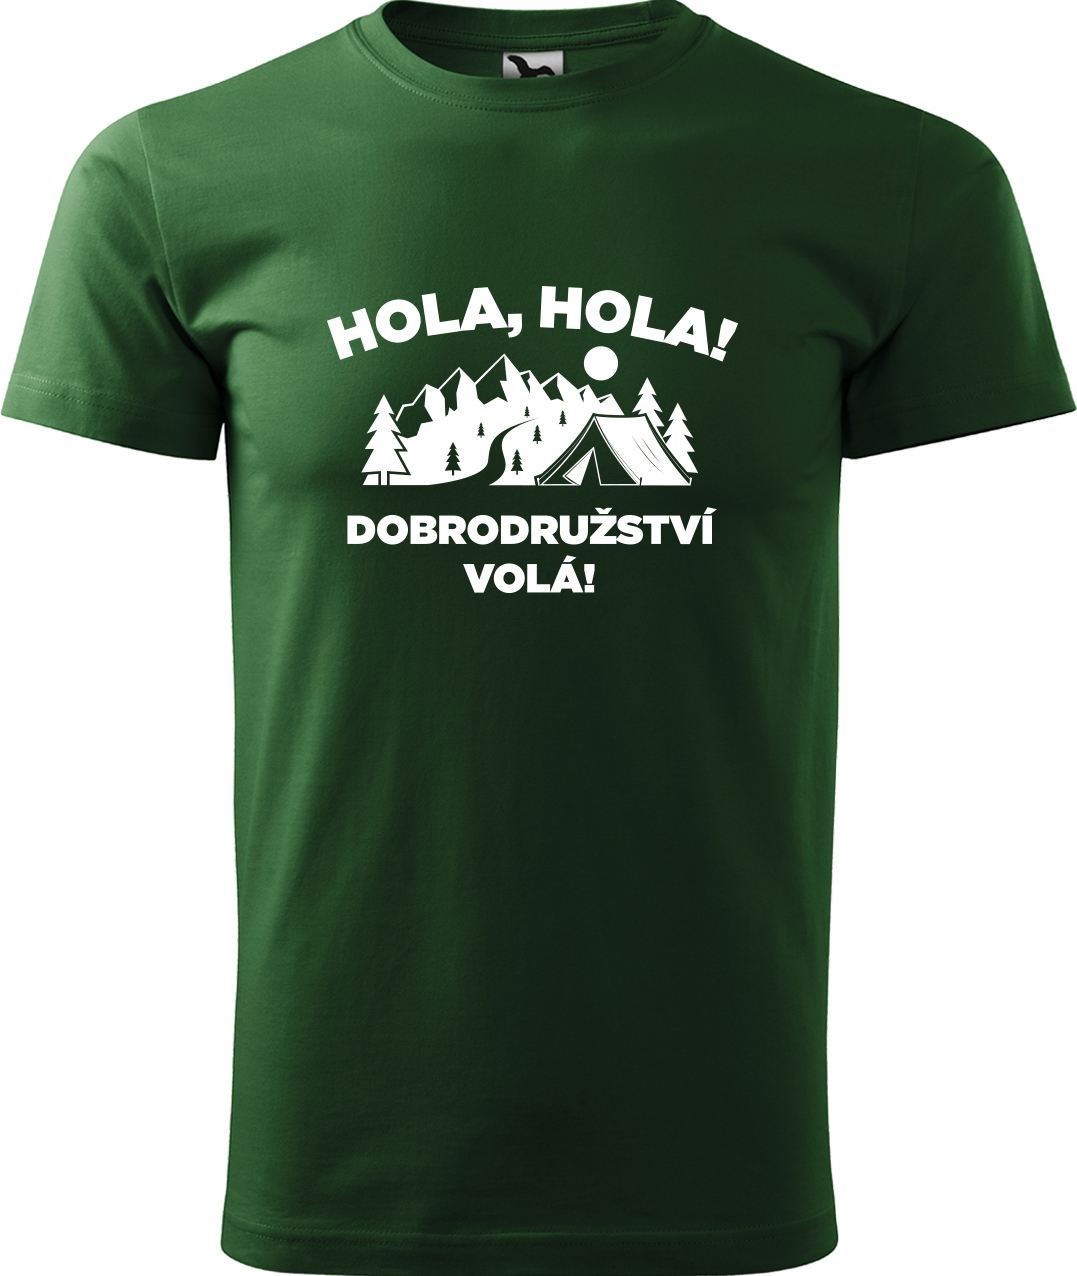 Pánské cestovatelské tričko - Hola hola! Dobrodružství volá! Velikost: S, Barva: Lahvově zelená (06), Střih: pánský